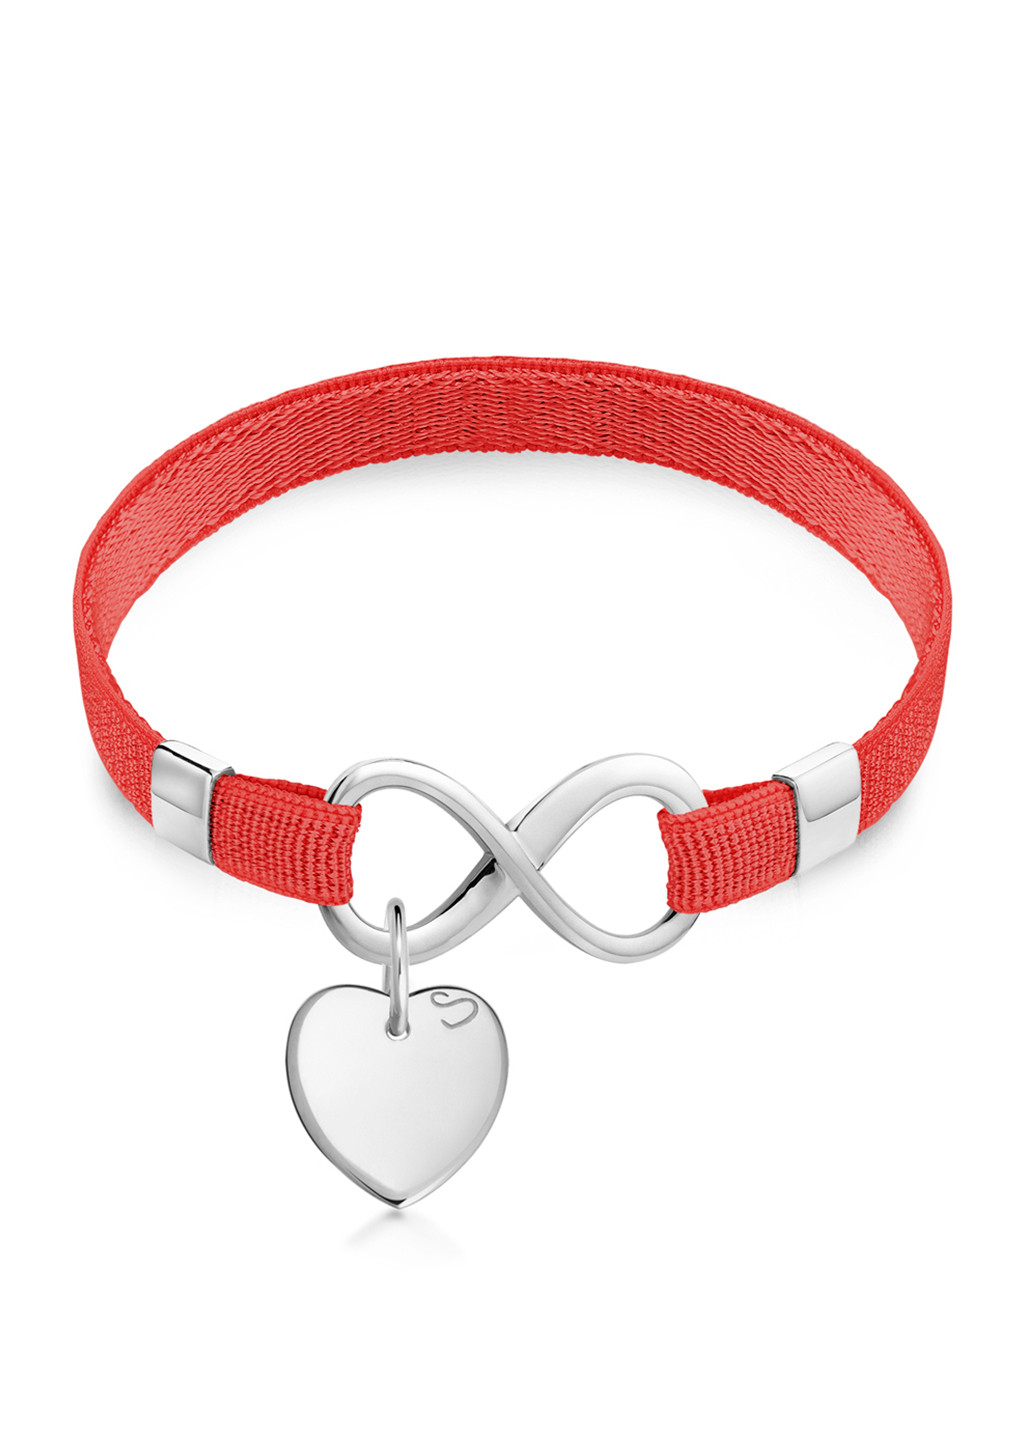 Cеребряный браслет «Polo Infinity» на ленте с подвеской «Сердце мини» 15 см Красный Peninsula (224608727)